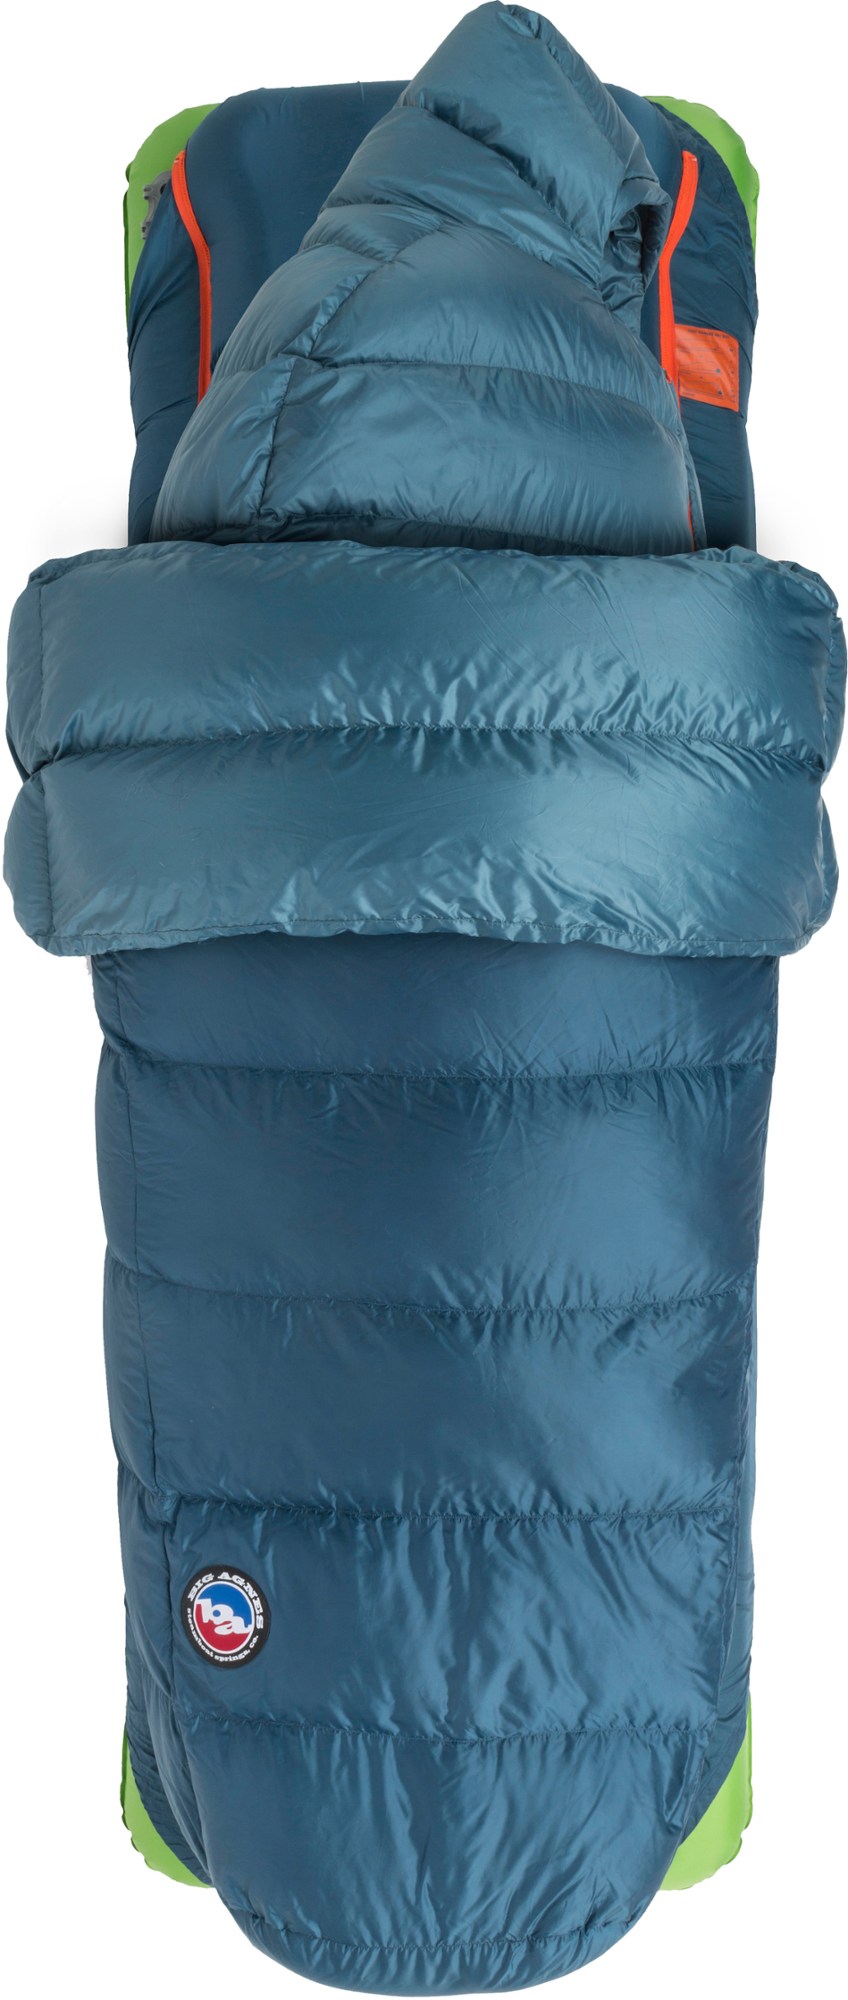 спальный мешок sidewinder sl 35 женский big agnes синий Спальный мешок Lost Ranger 3N1 15 - мужской Big Agnes, синий